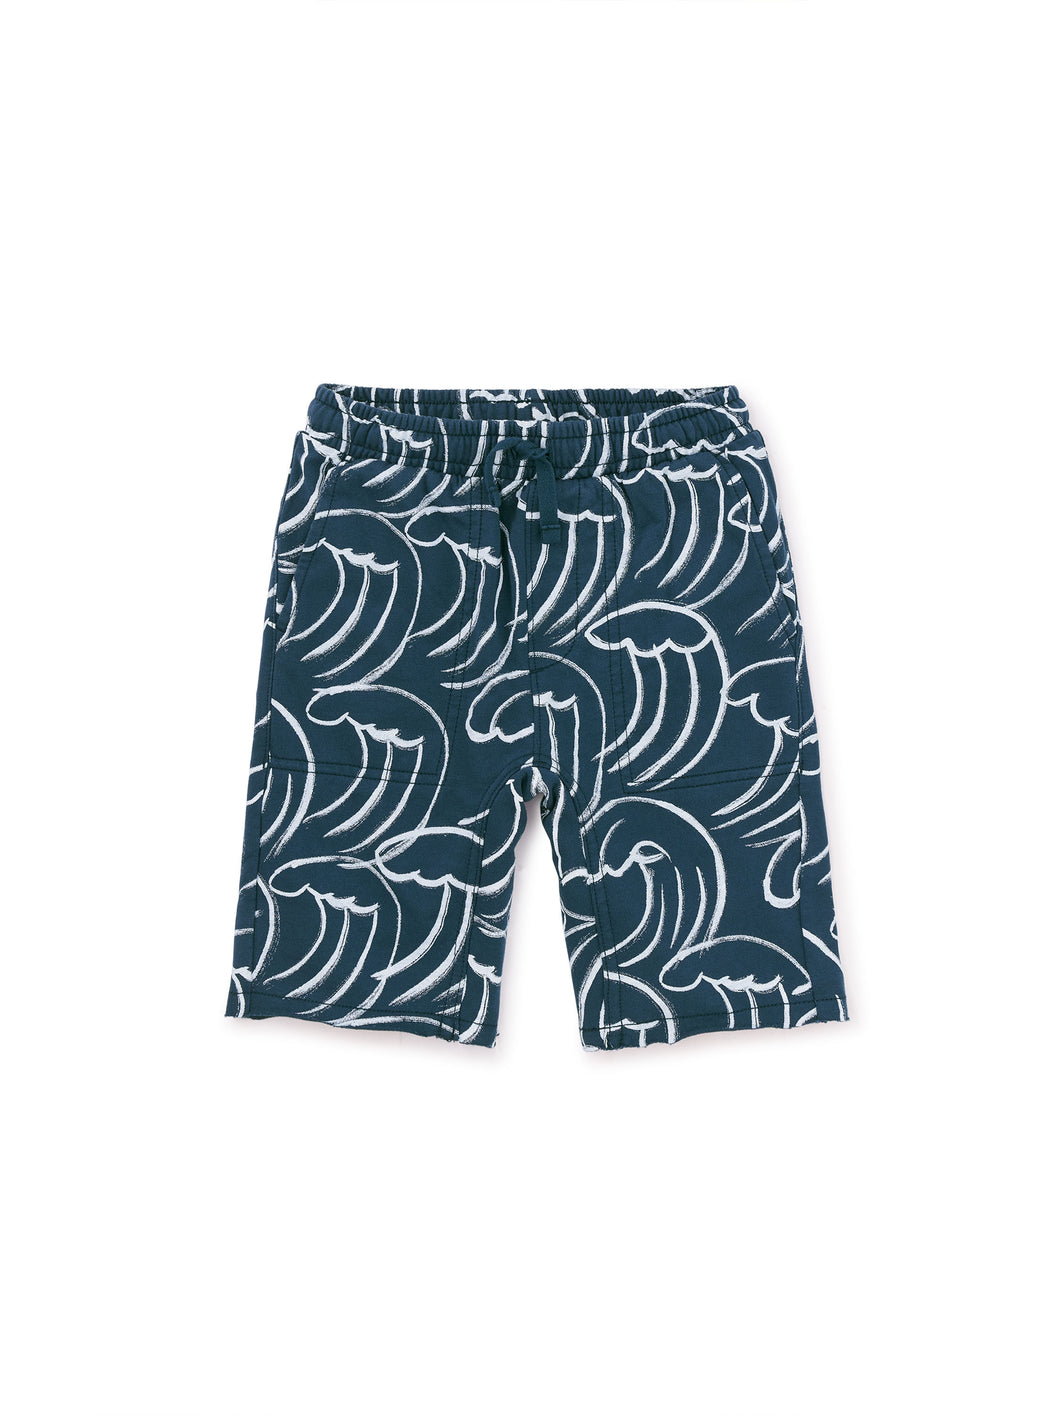 Printed Gym Shorts - Kanagawa Waves